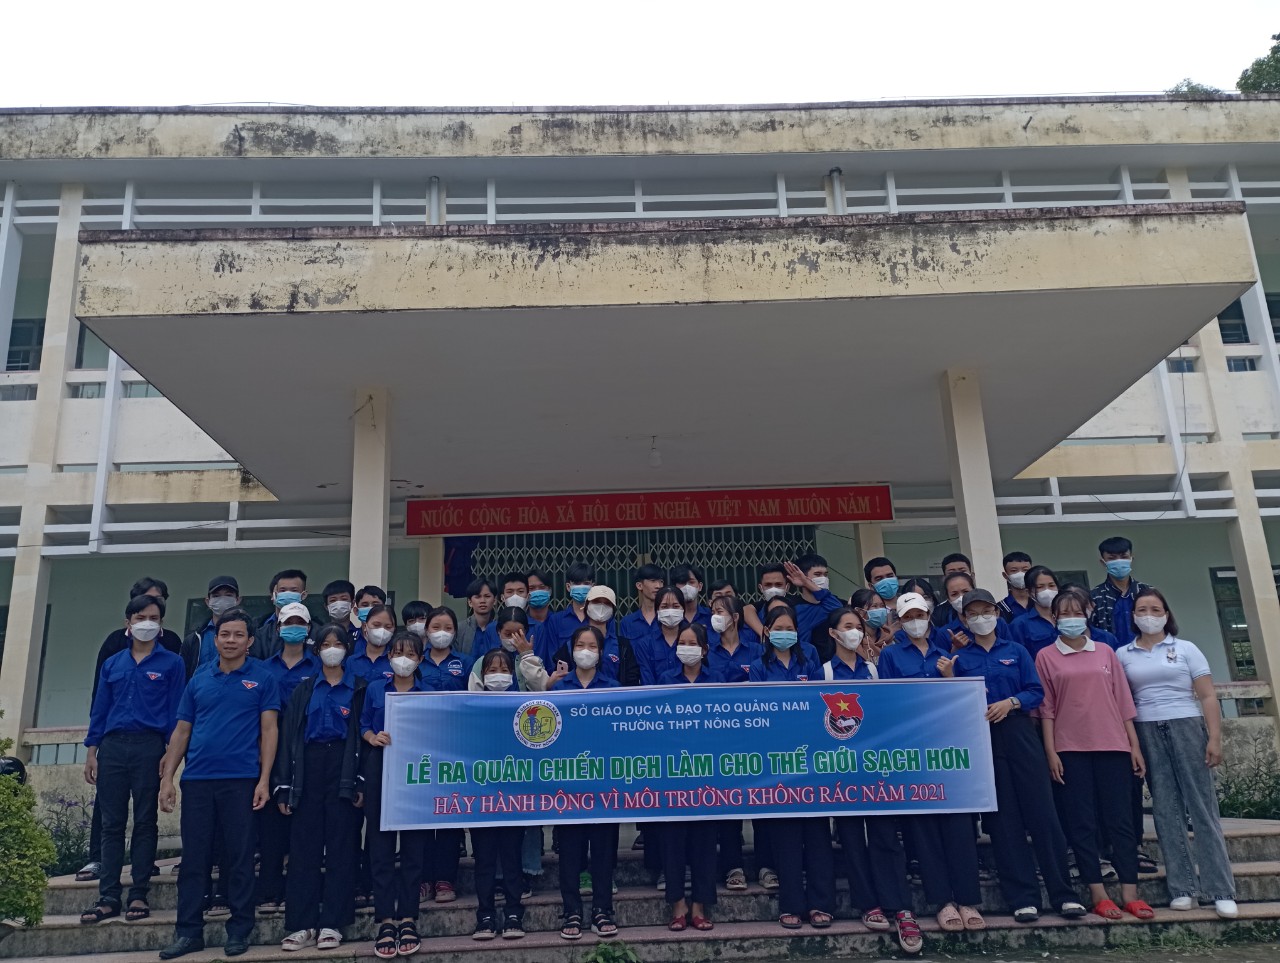 Đoàn trường THPT Nông Sơn tổ chức ra quân chiến dịch làm cho thế giới sạch hơn